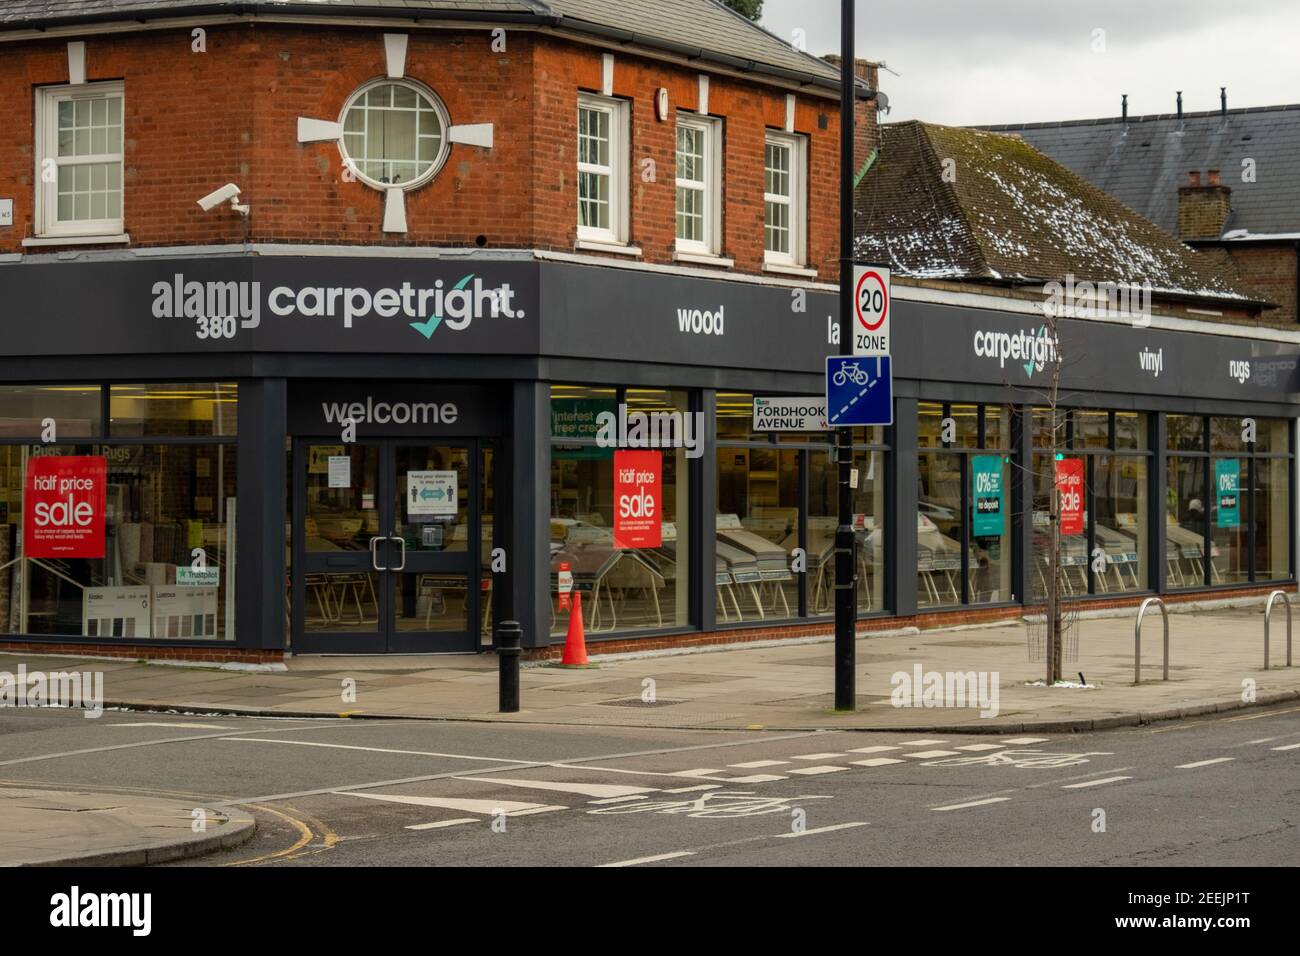 Londres- Alfombras tienda derecha en Ealing Common, una cadena británica de tiendas de alfombras Foto de stock